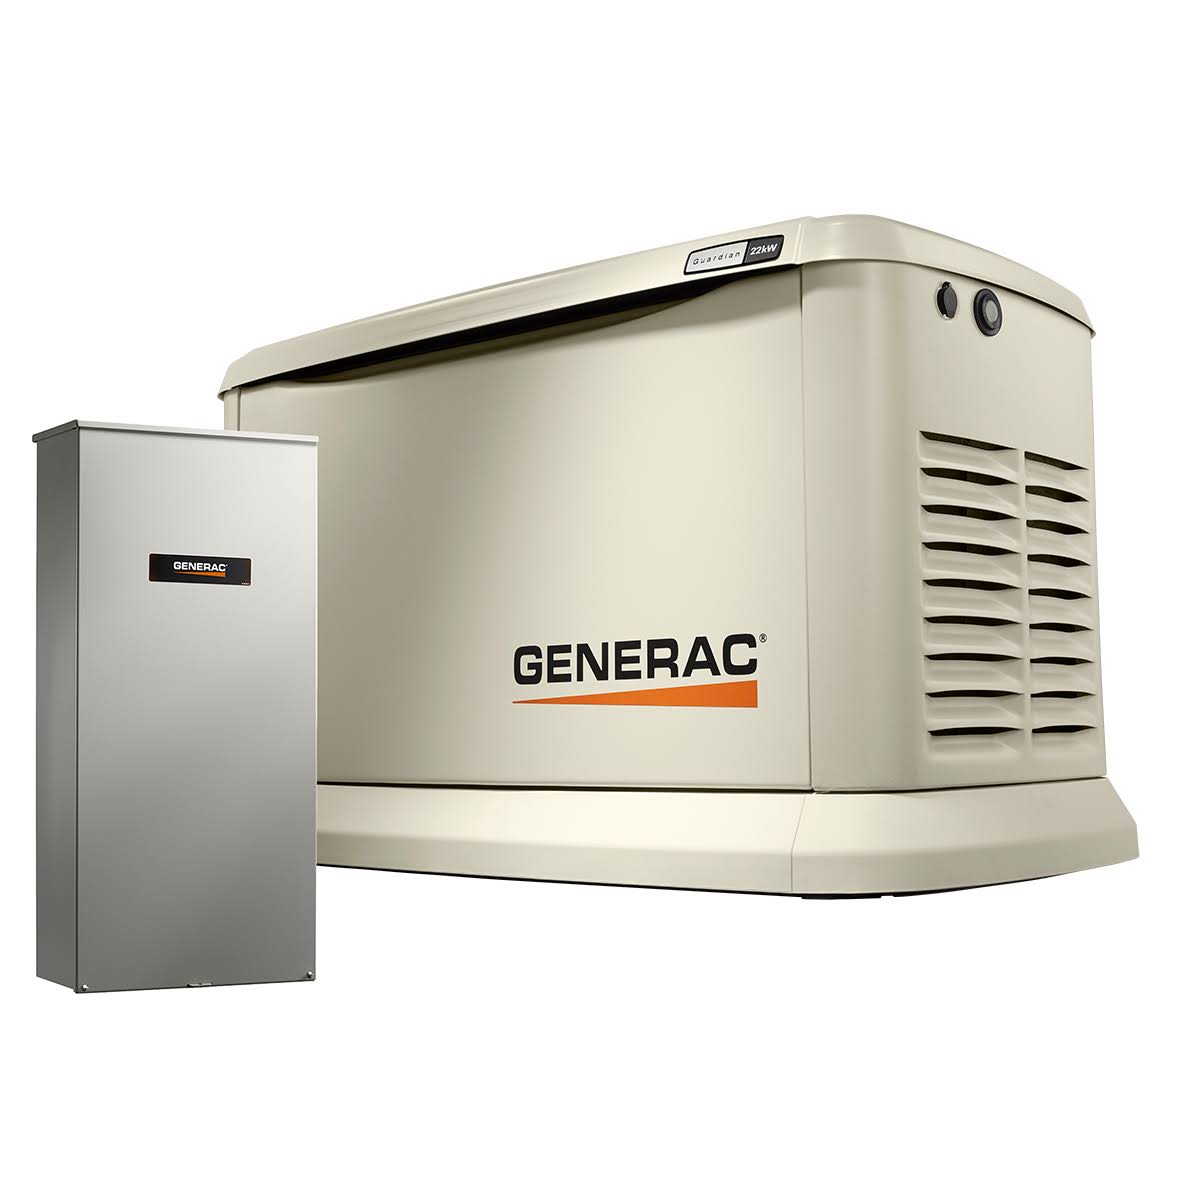 Generac Guardian Generac 7043 Guardian Series 22kW/19.5kW Générateur de secours domestique refroidi par air avec commutateur de transfert pour toute la maison 200 A (non CUL)